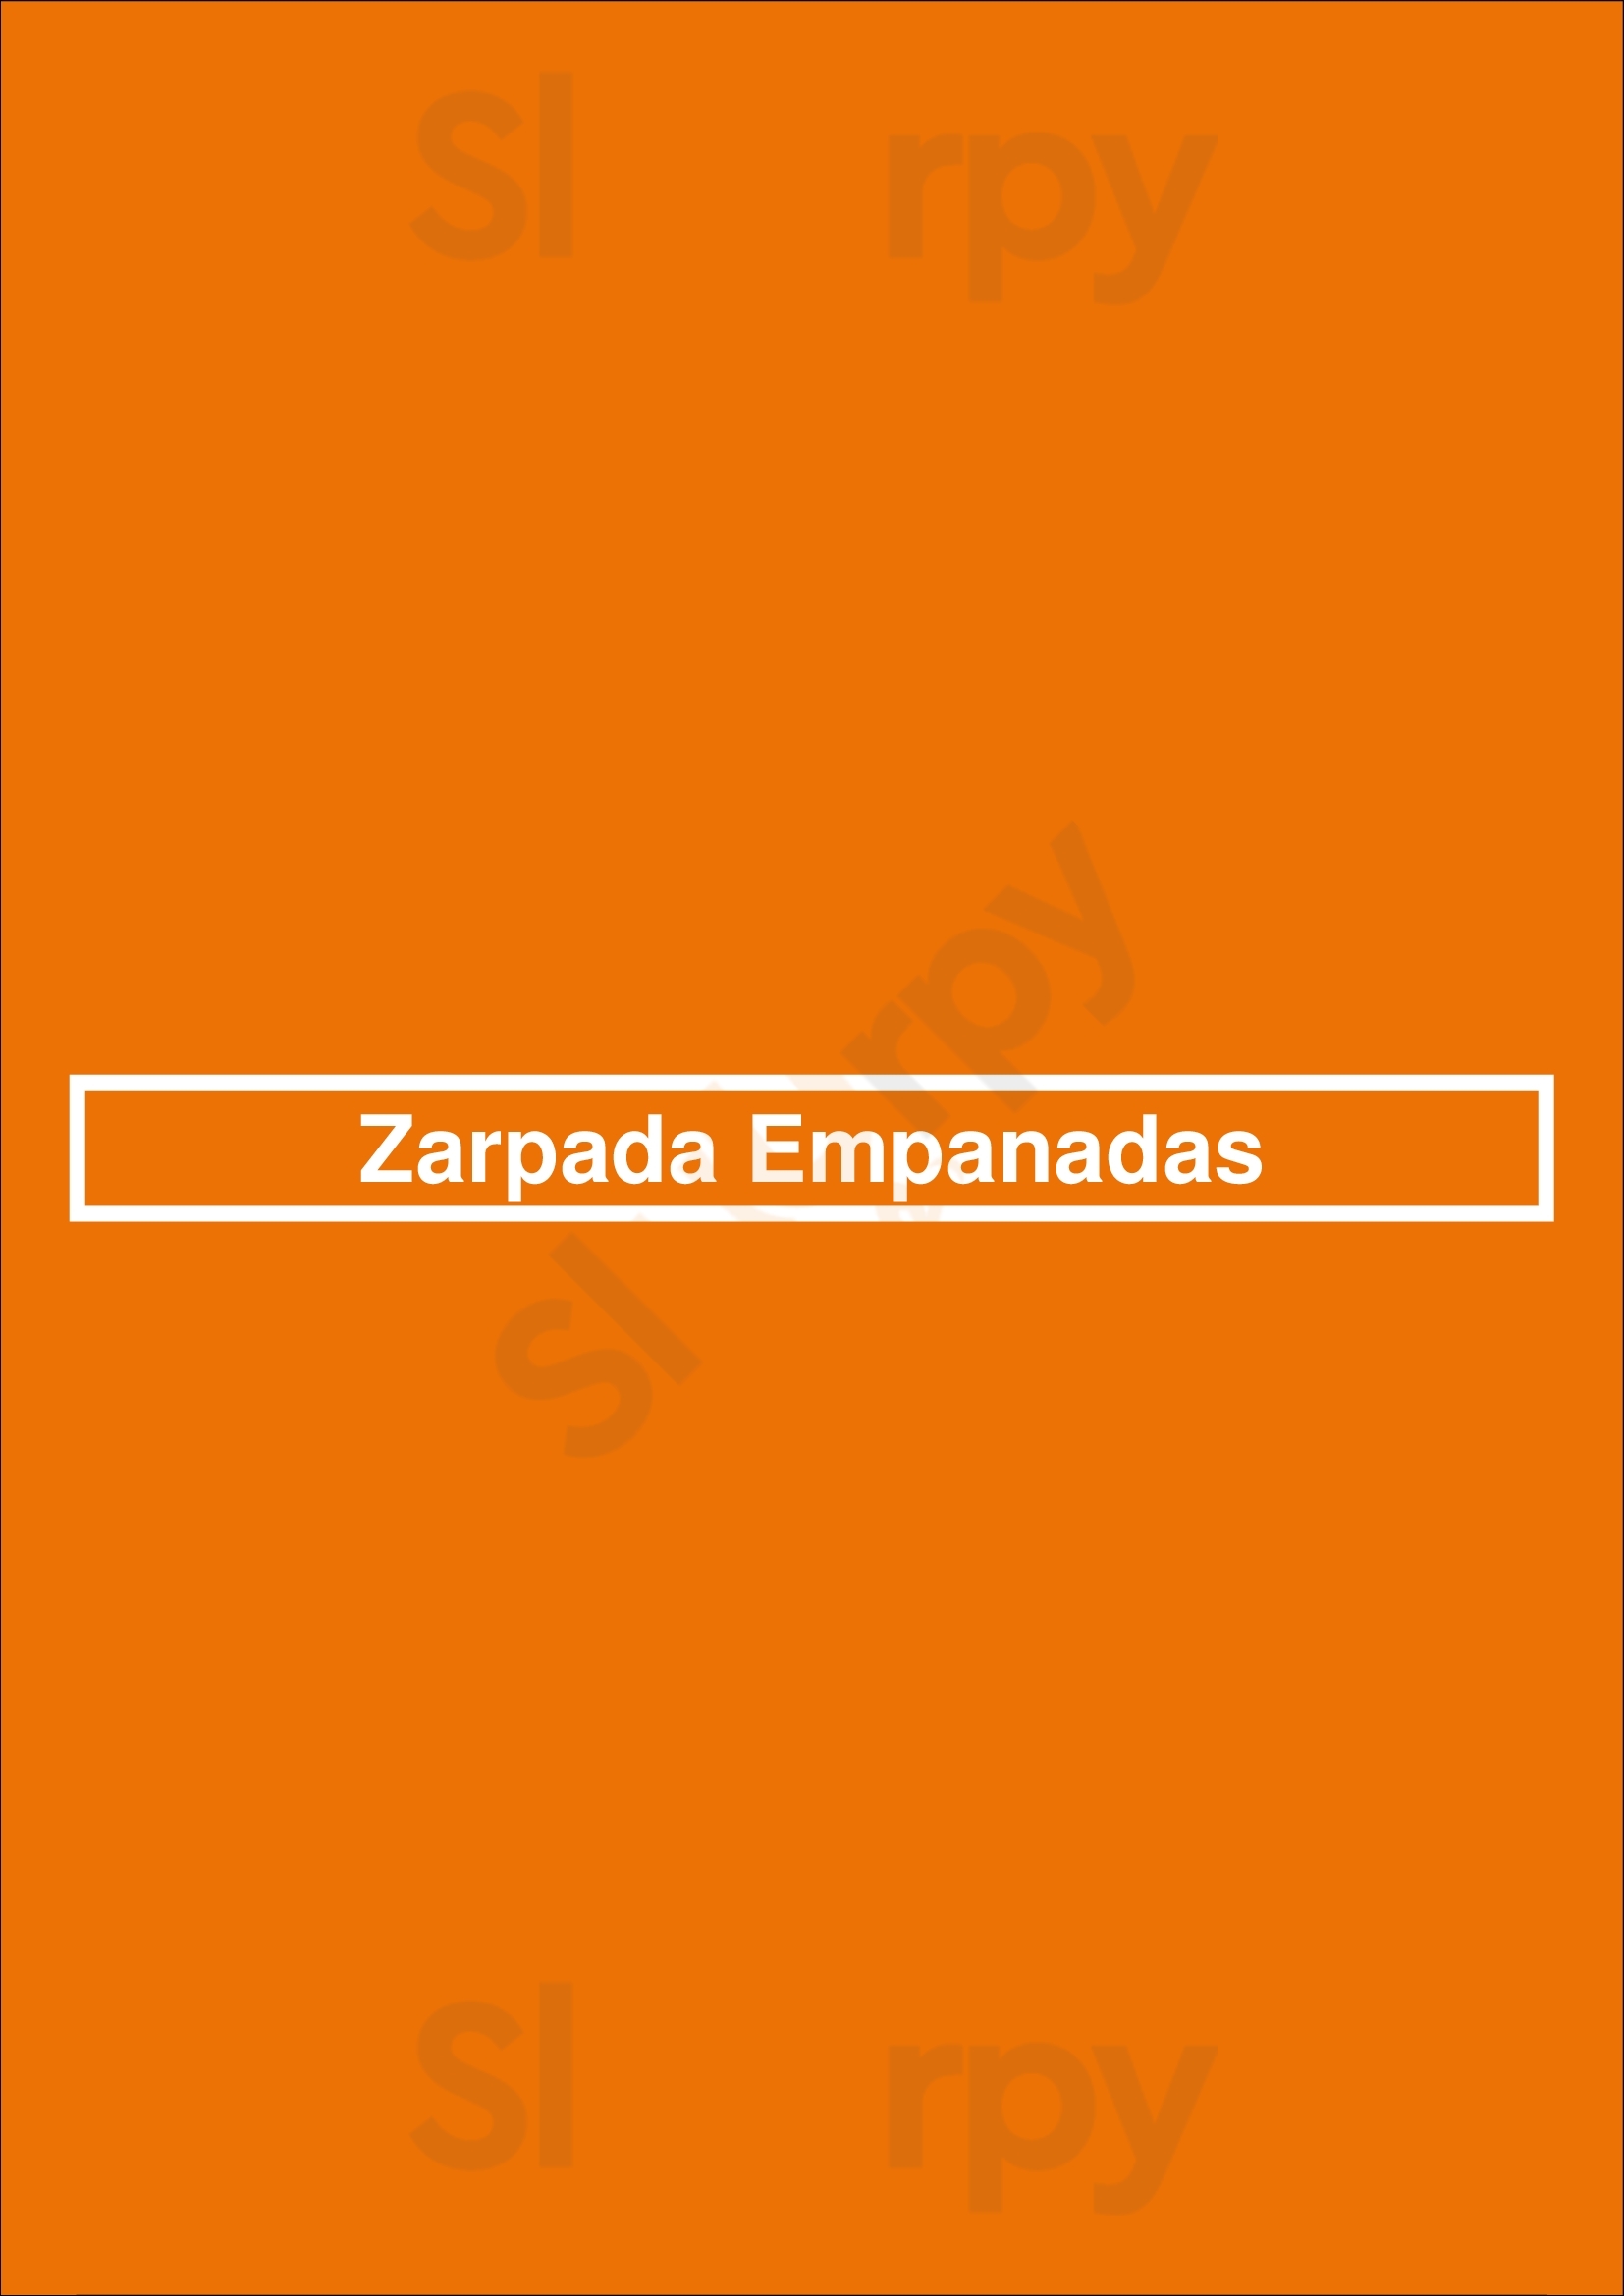 Zarpada Empanadas São Paulo Menu - 1